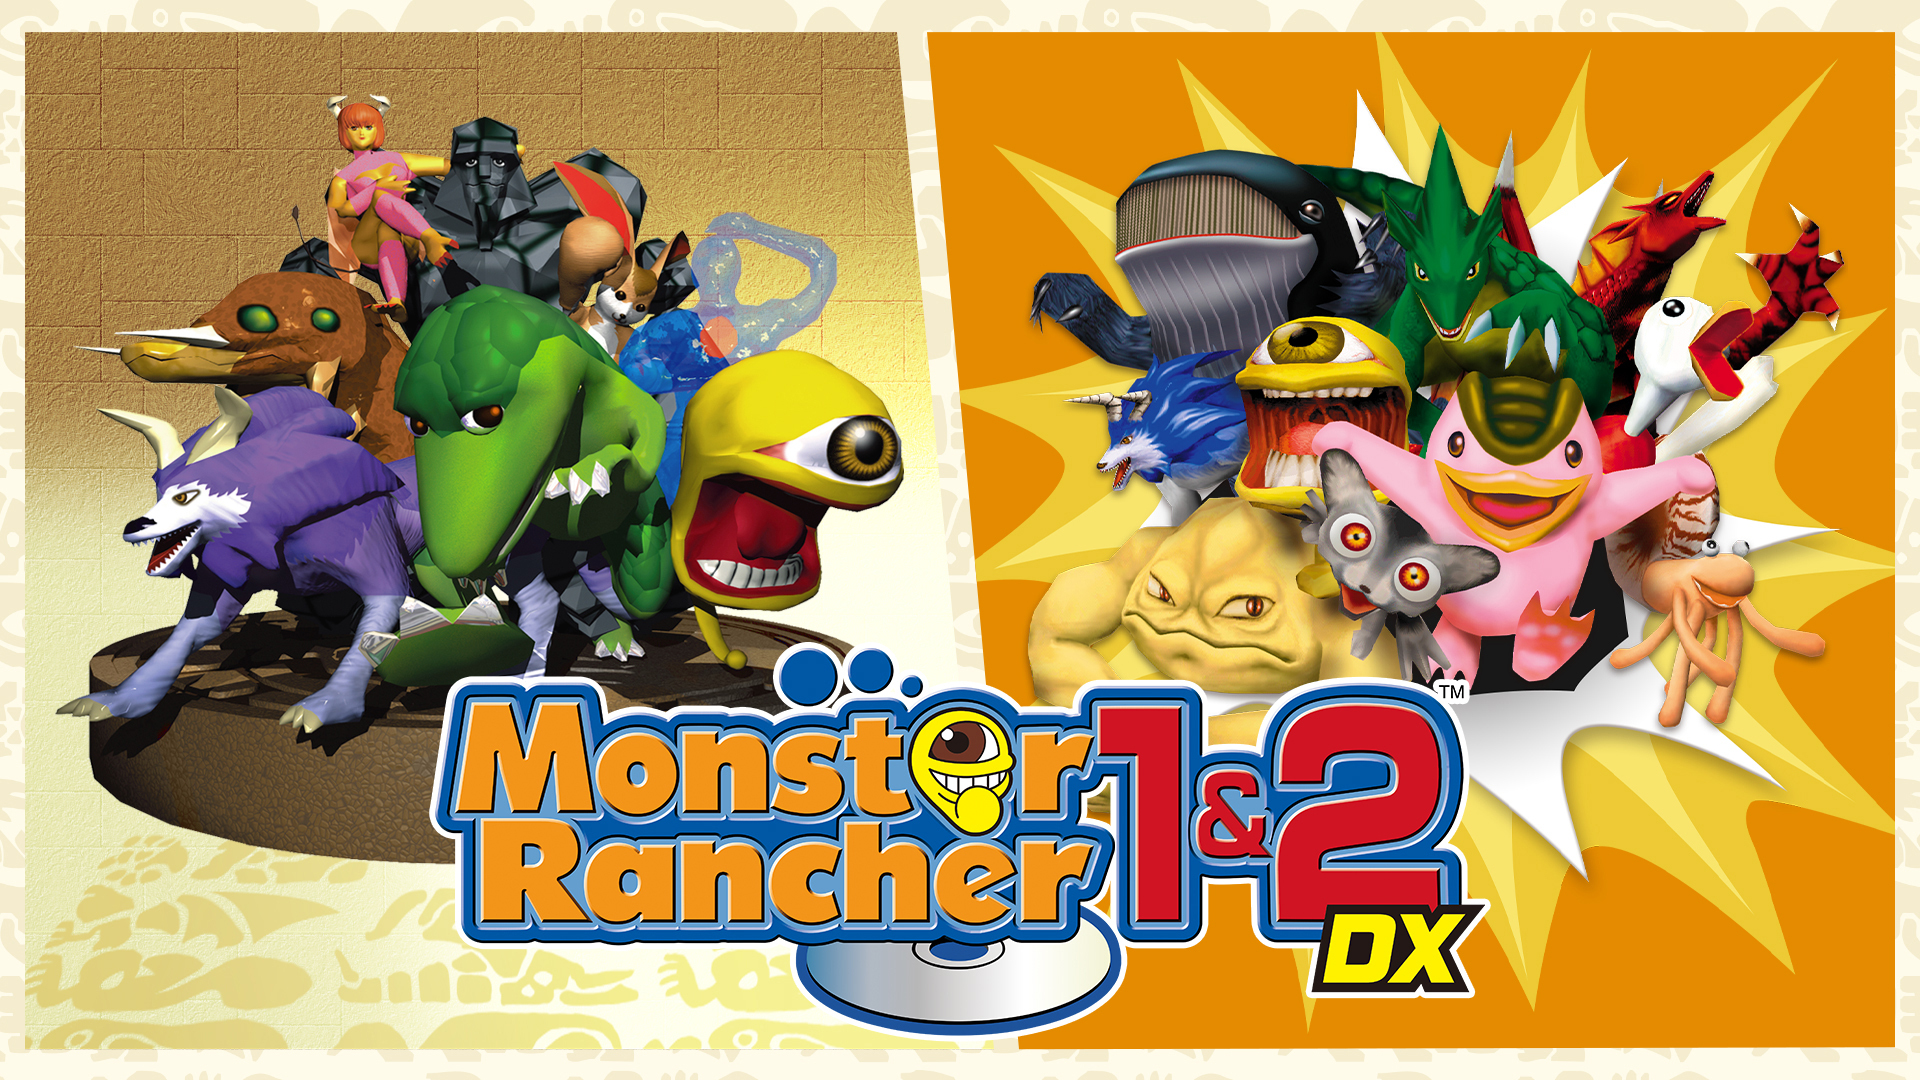 Monster Rancher 1 & 2 DX - Metacritic